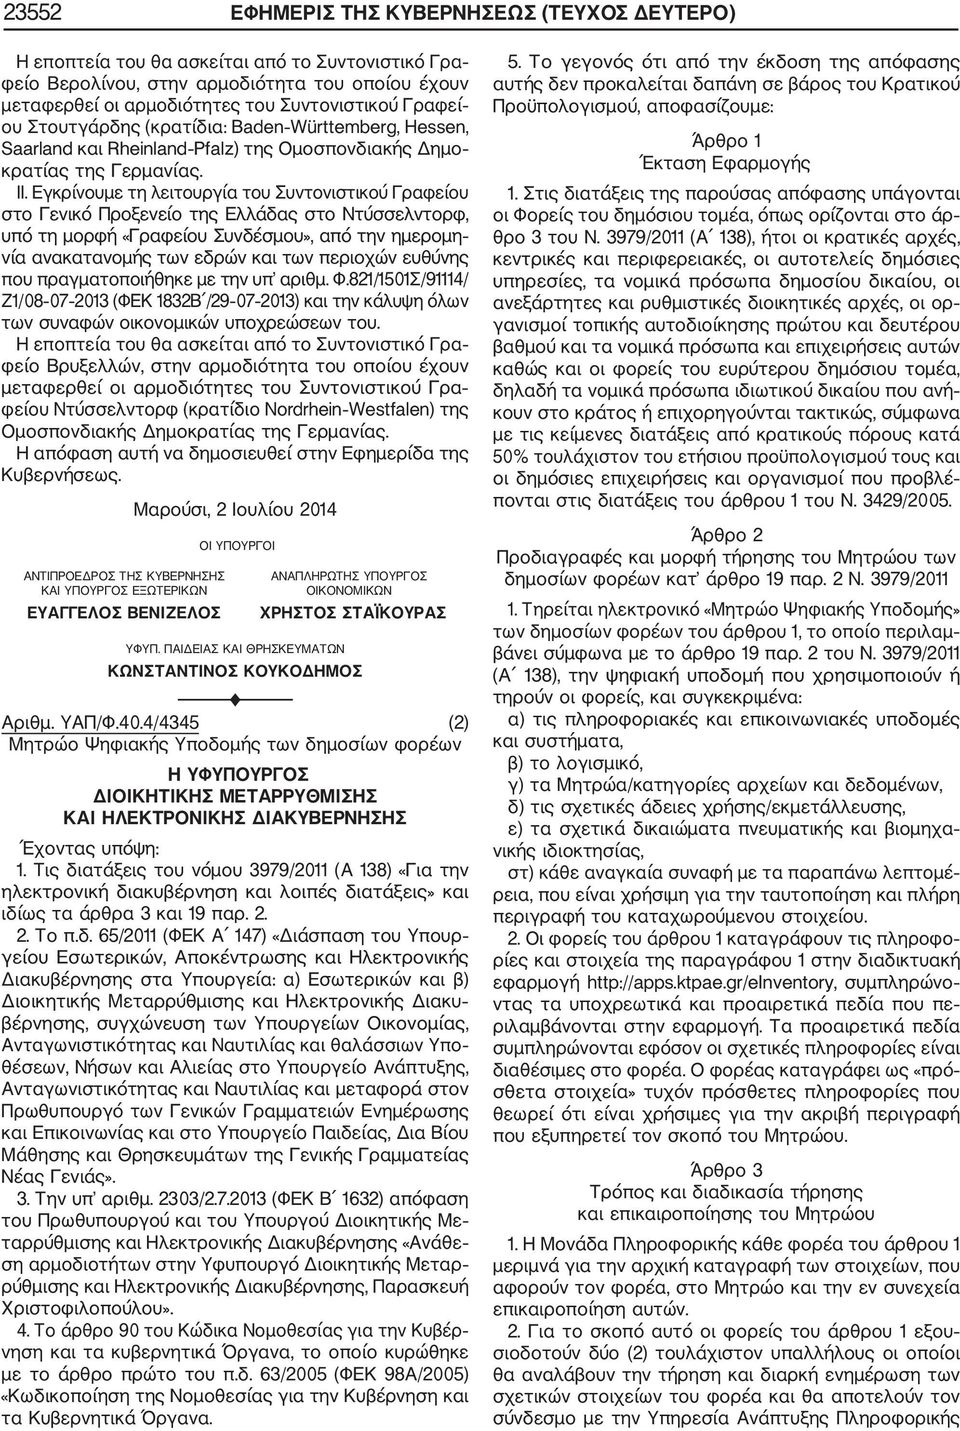 Εγκρίνουμε τη λειτουργία του Συντονιστικού Γραφείου στο Γενικό Προξενείο της Ελλάδας στο Ντύσσελντορφ, υπό τη μορφή «Γραφείου Συνδέσμου», από την ημερομη νία ανακατανομής των εδρών και των περιοχών